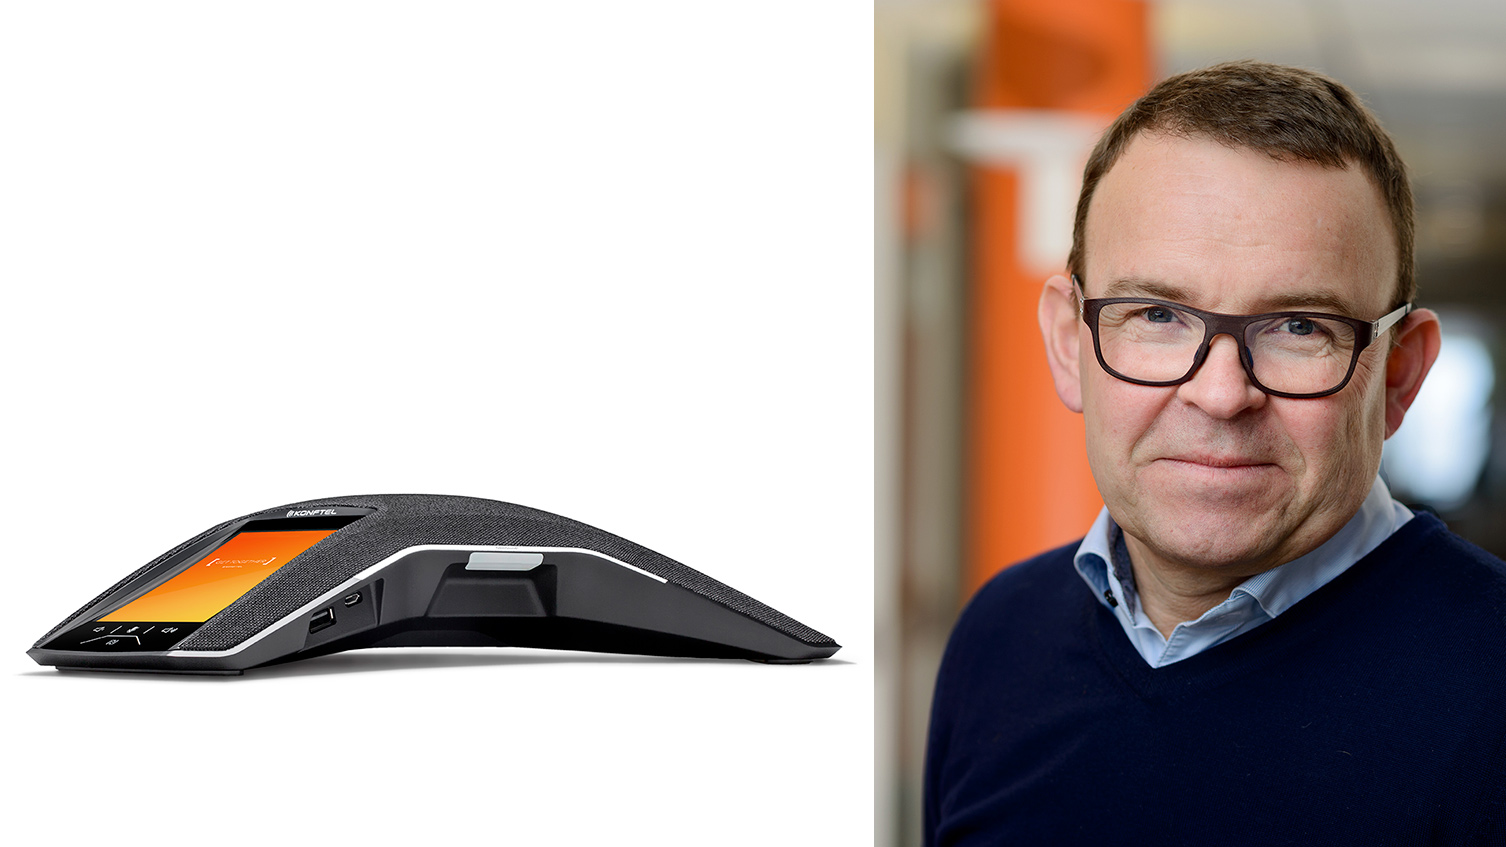 Umeåföretaget Konftel får internationellt pris för sin konferenstelefon Konftel 800. Peter Renkel, vd: "Det är en riktigt fin kvalitetsstämpel."